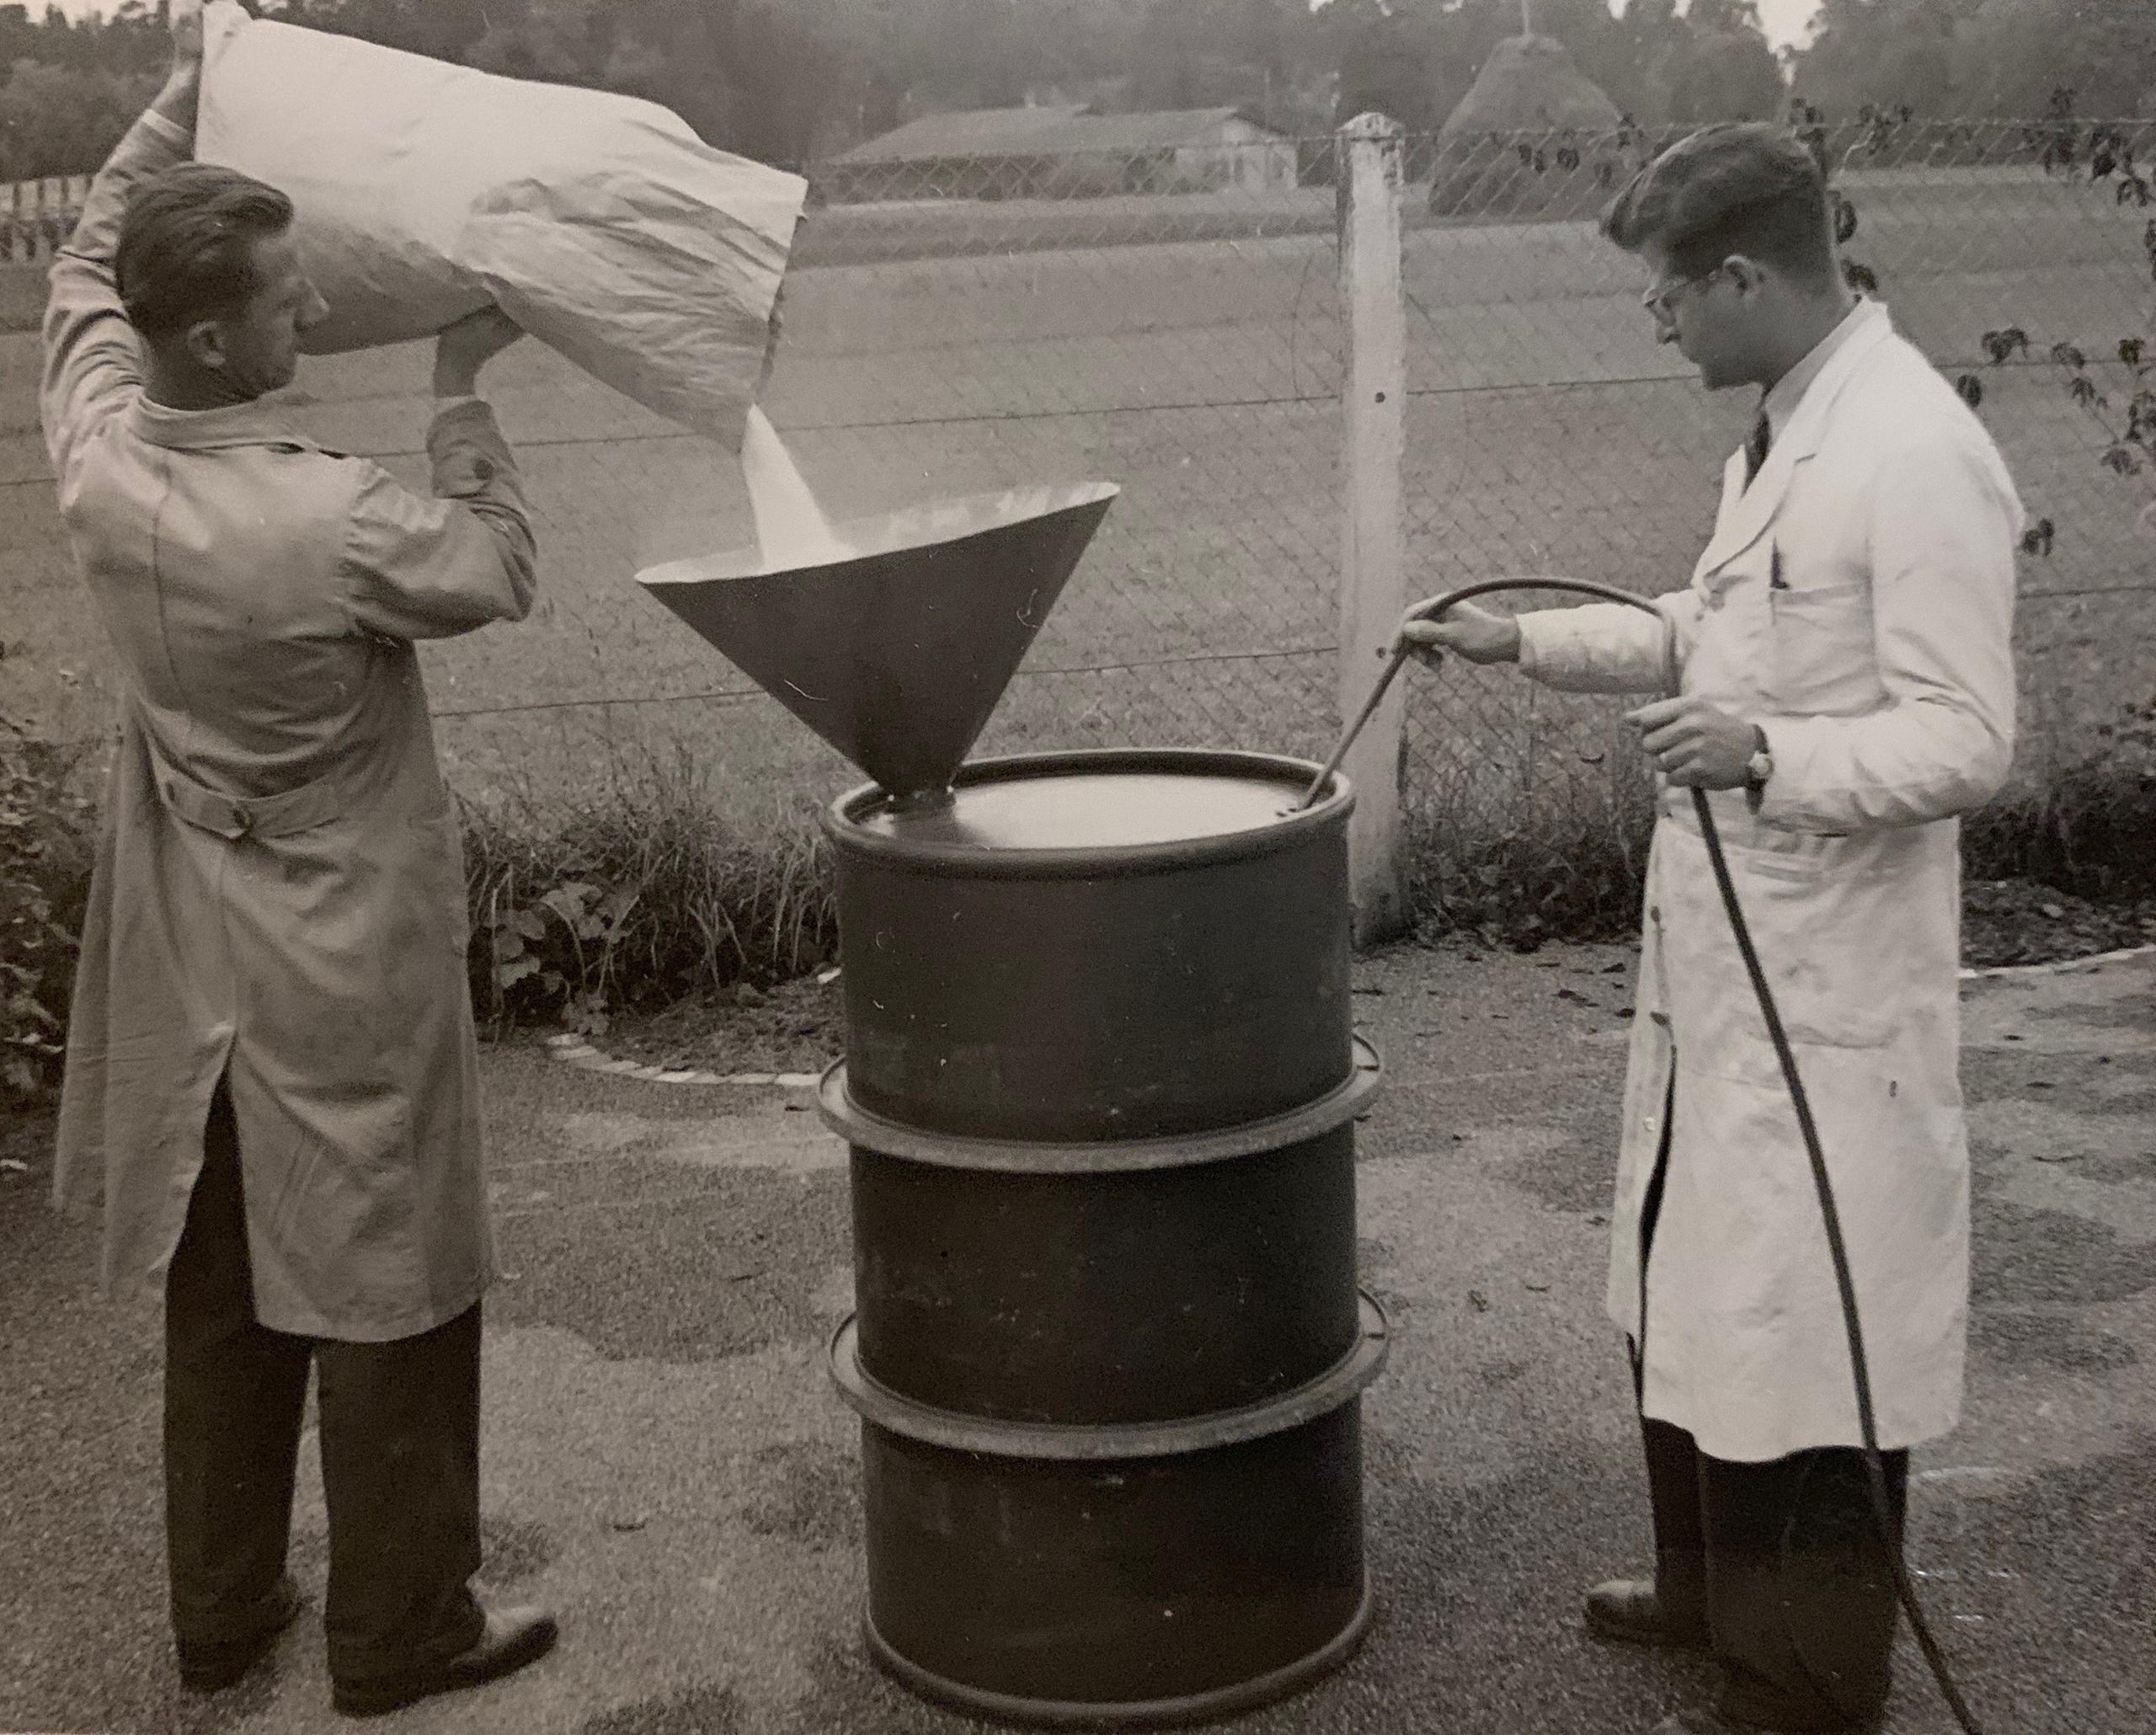 Opalmgranulat wird in Fässer abgefüllt (1952)